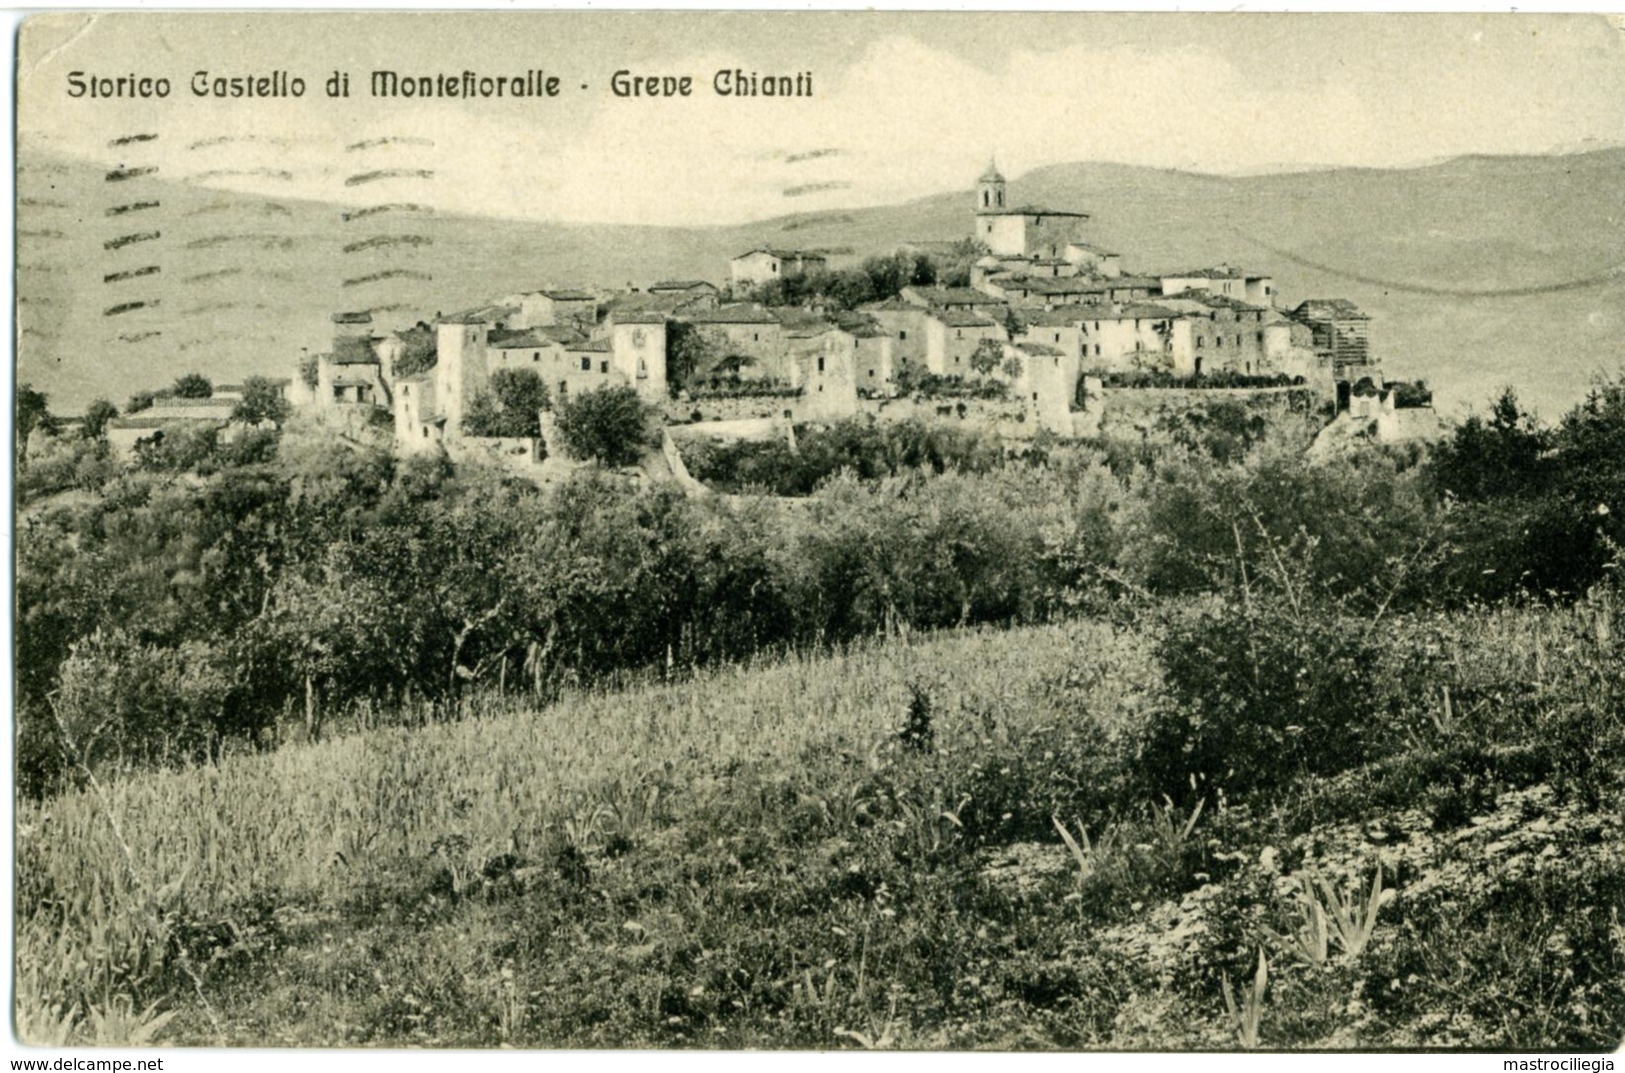 MONTEFIORALLE  GREVE IN CHIANTI  FIRENZE  Storico Castello Di Montefioralle - Firenze